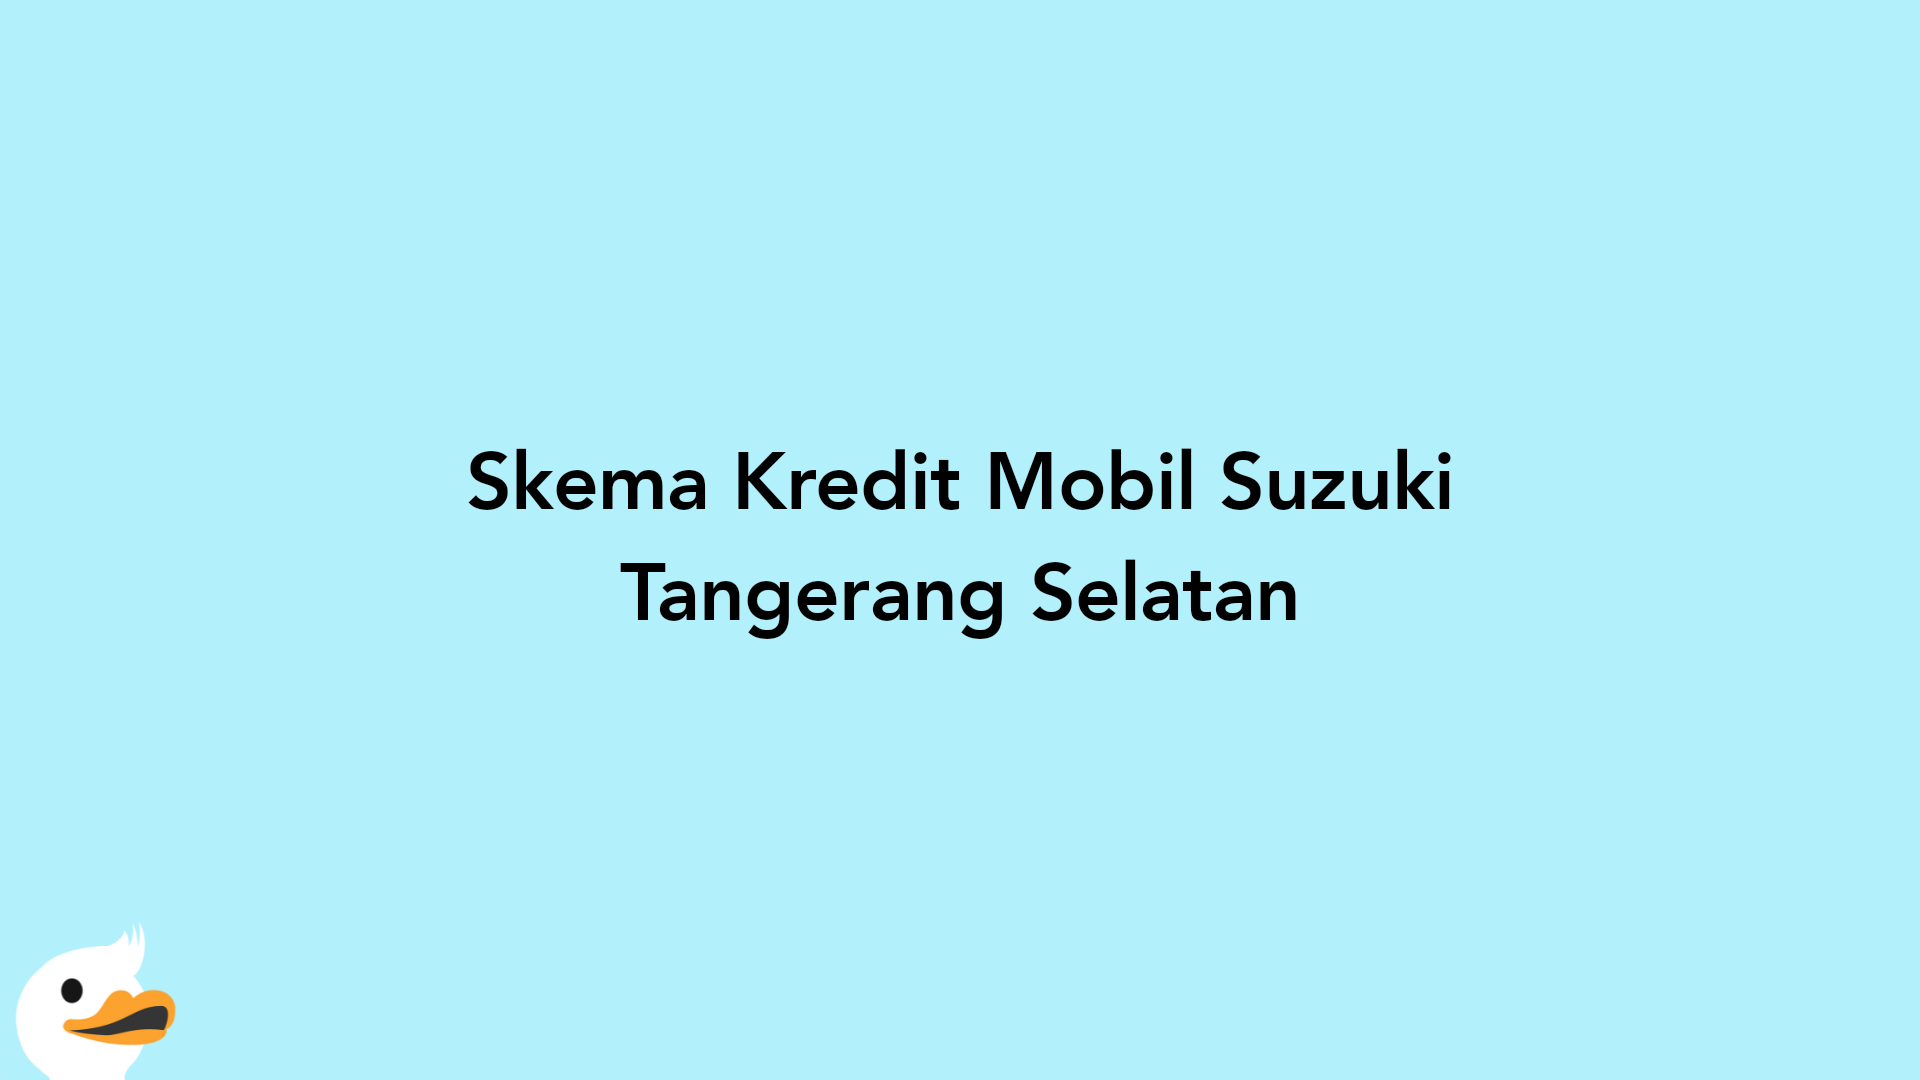 Skema Kredit Mobil Suzuki Tangerang Selatan